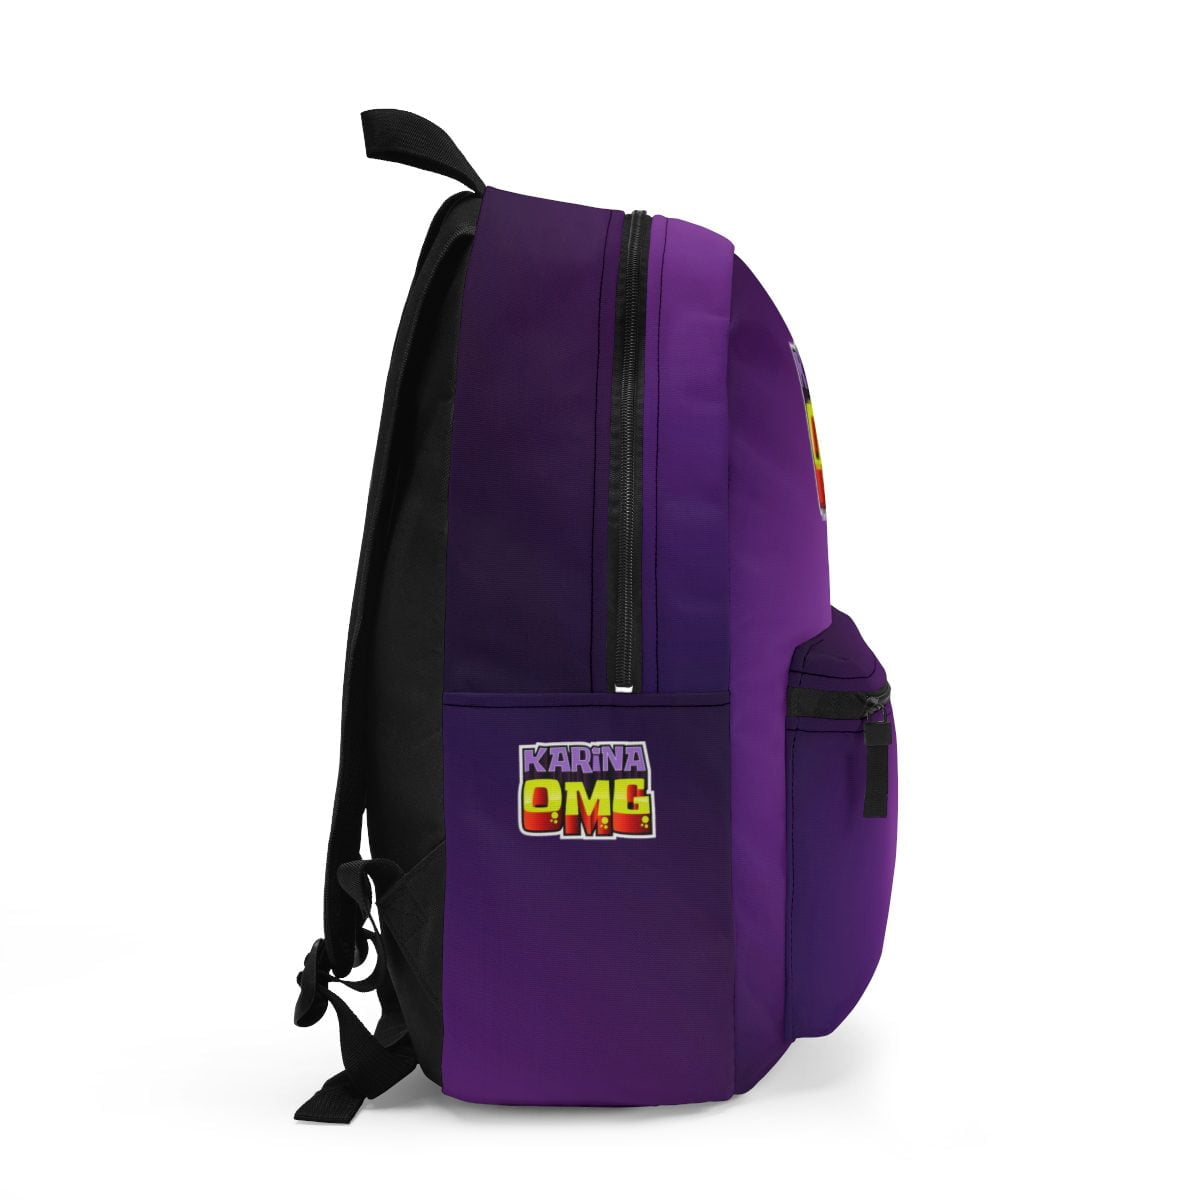 Karina OMG YouTuber Purple Backpack Cool Kiddo 12